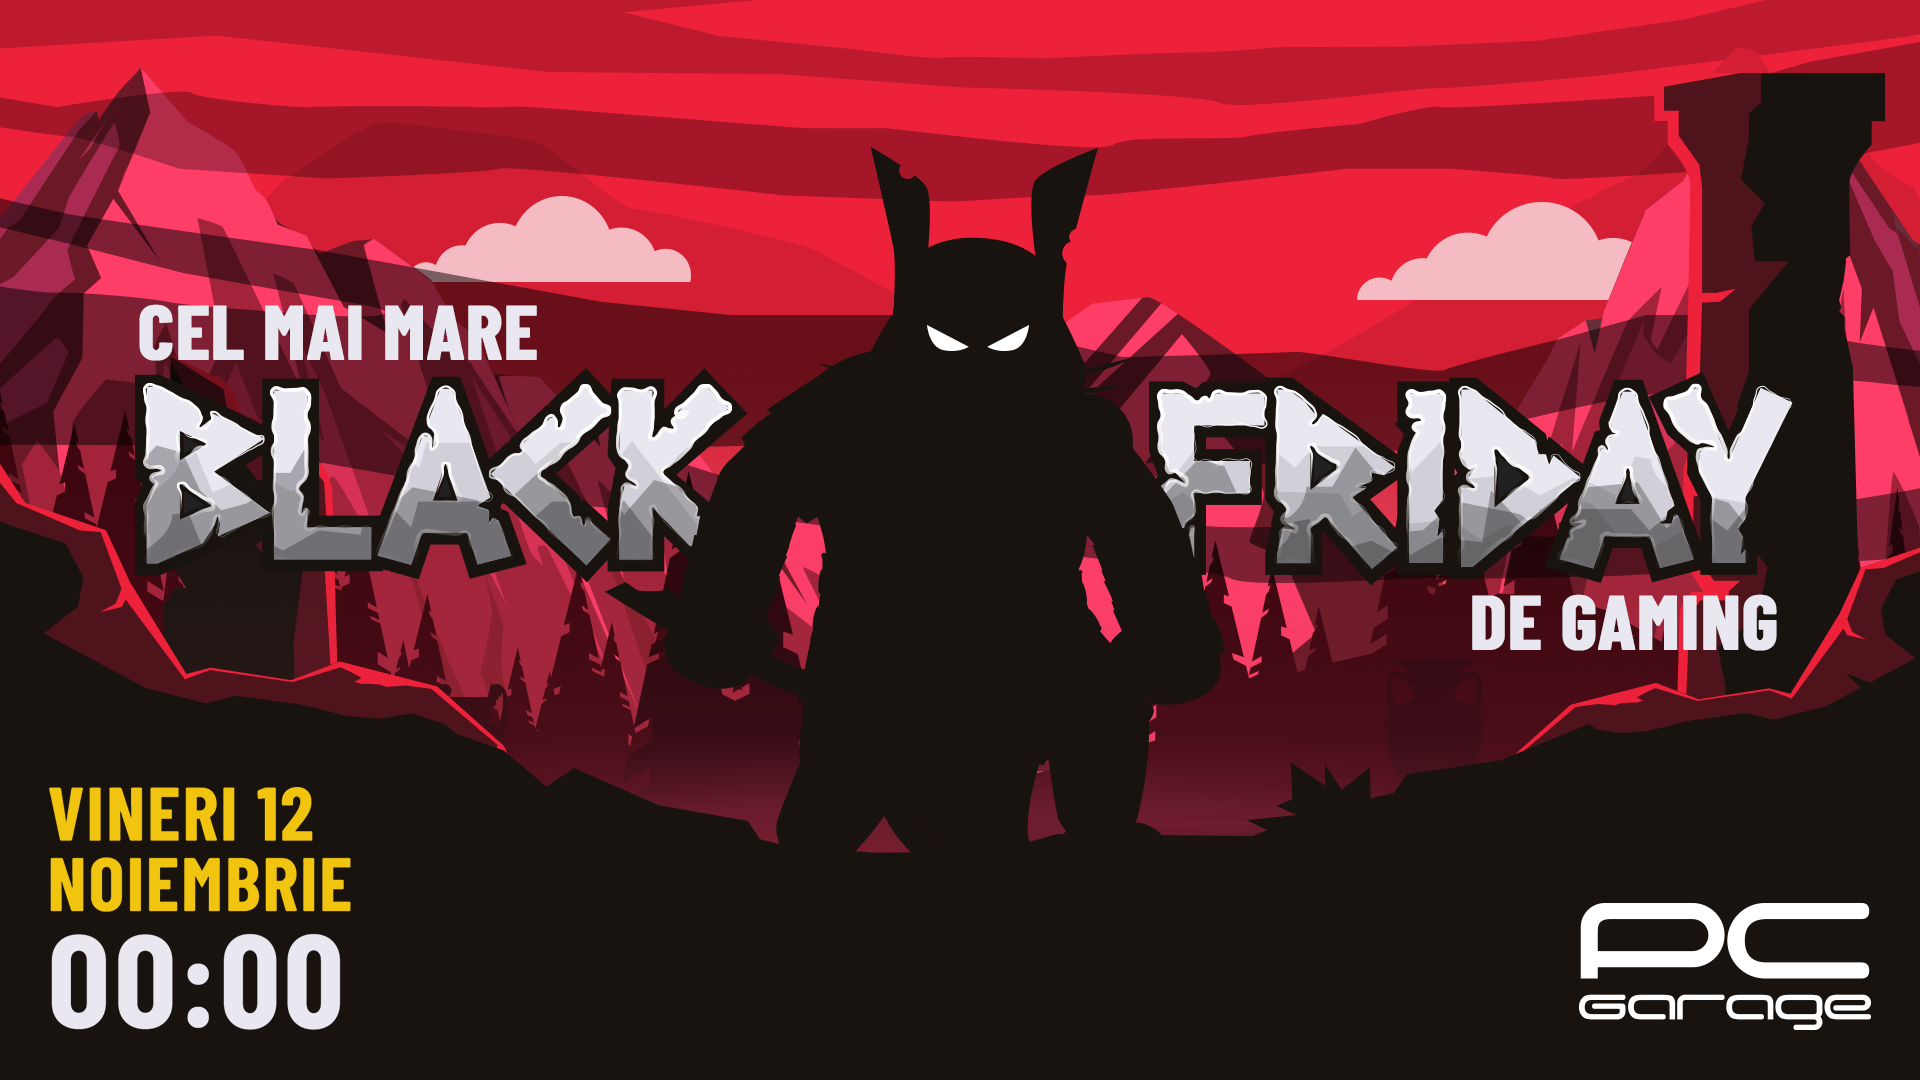 PC Garage anunță Black Friday de gaming